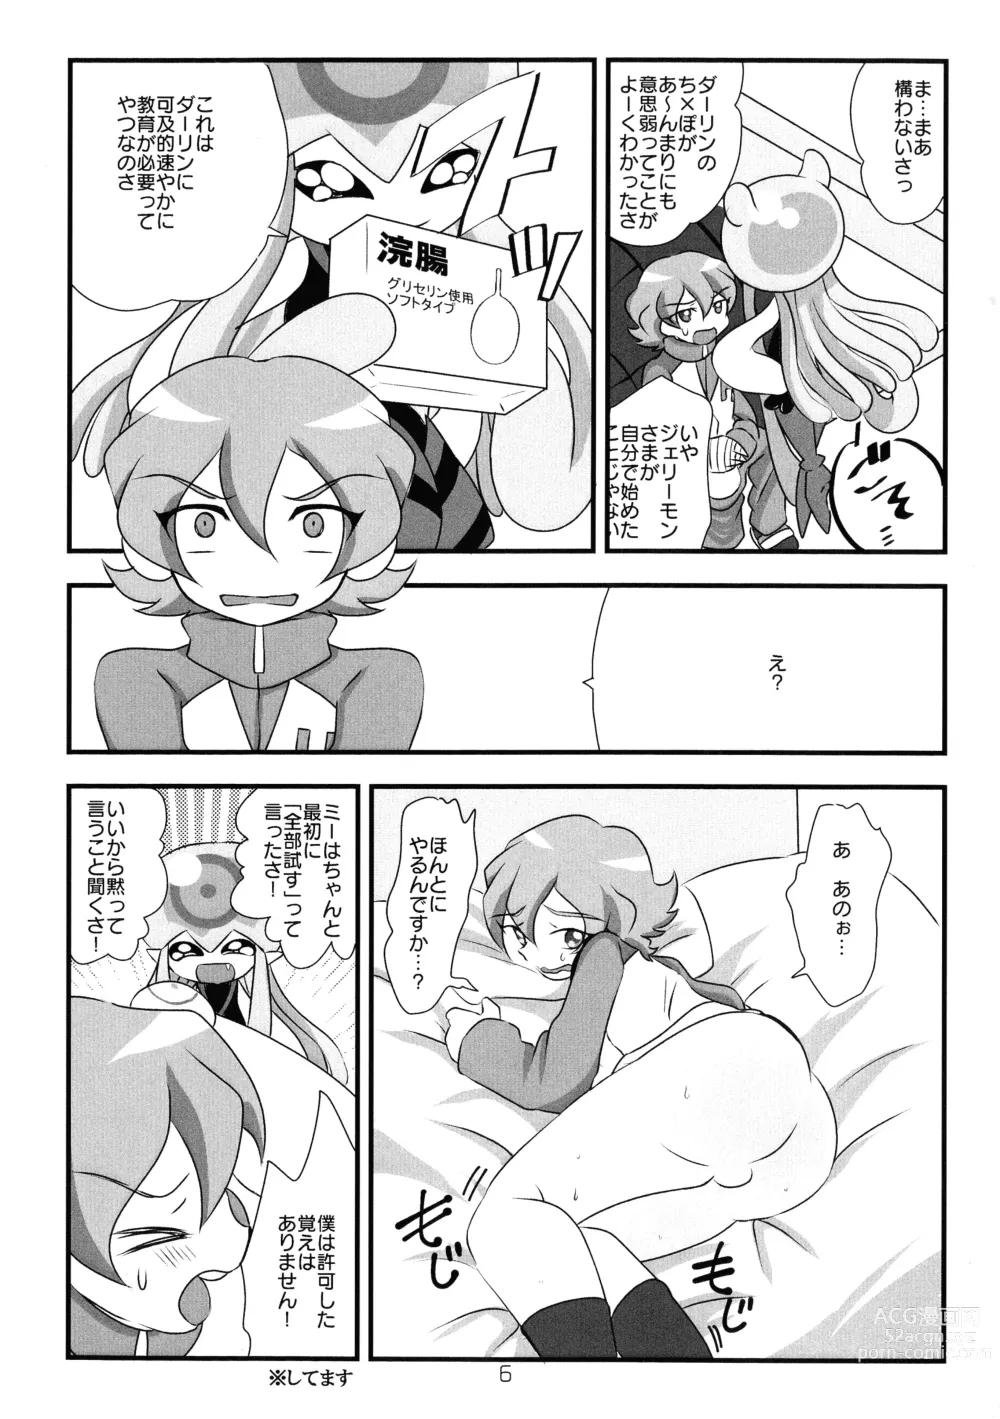 Page 7 of doujinshi Chusei kokoro ikusei gairon 2